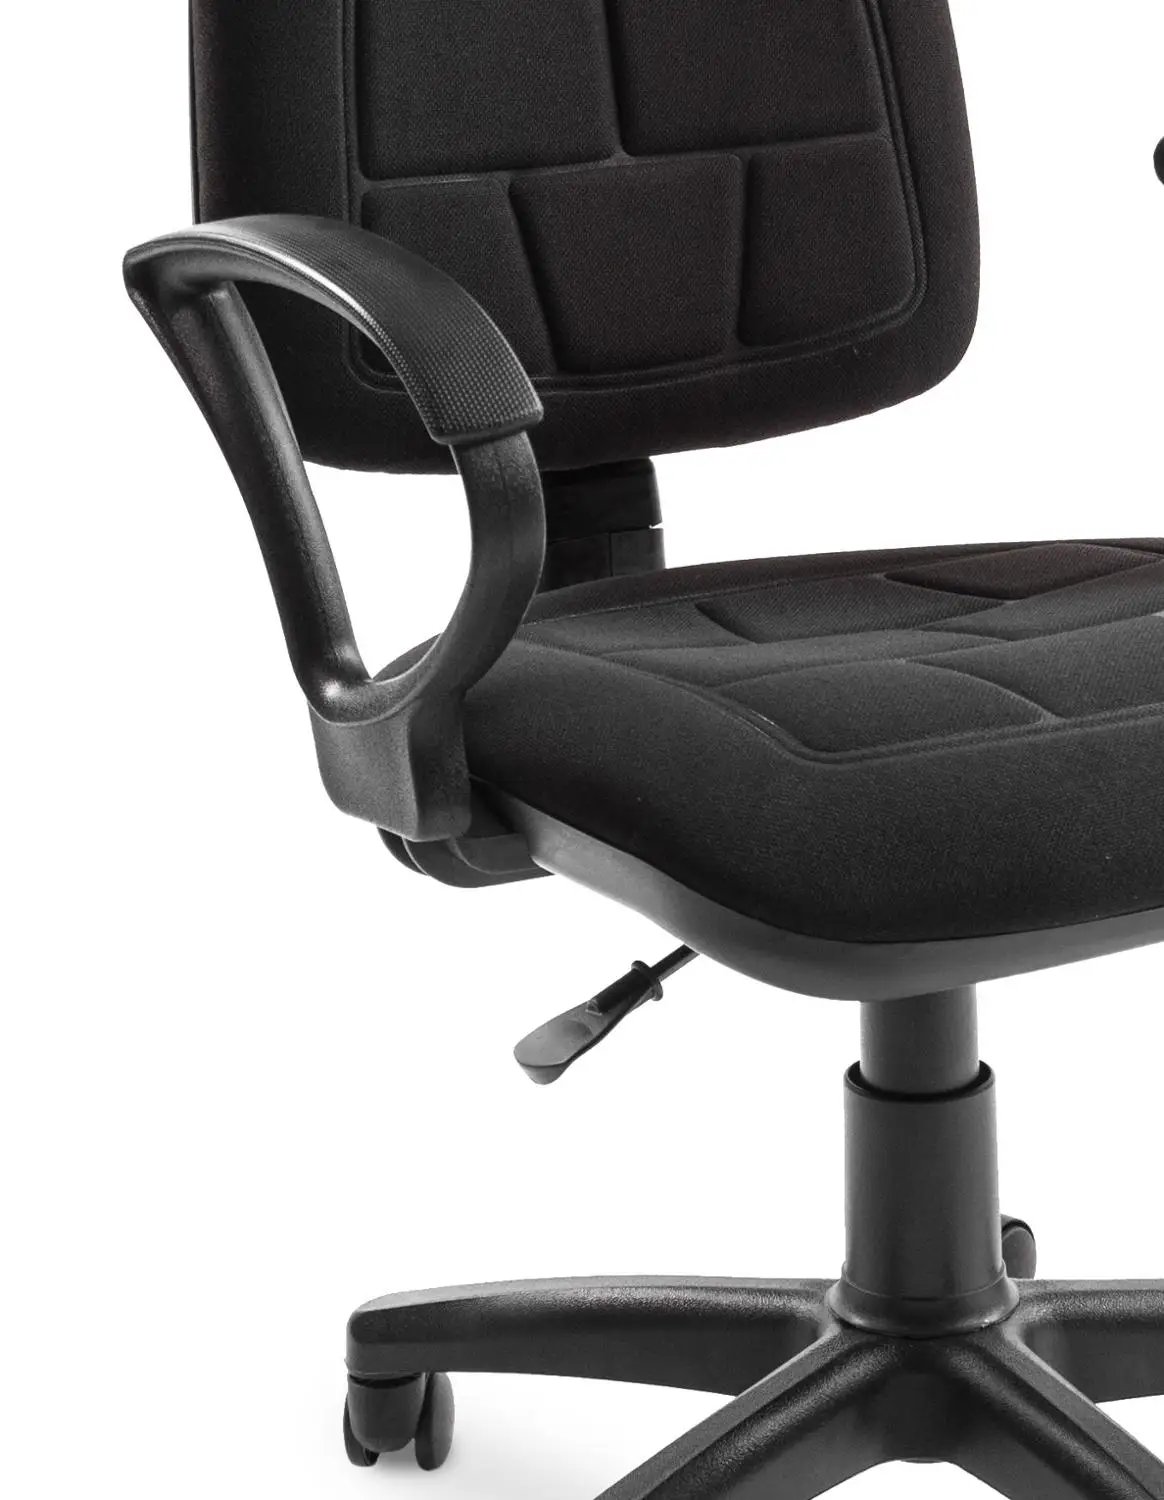 Кресло компьютерное Chairman 205 экономичное для дома офиса кресло Престиж | Мебель